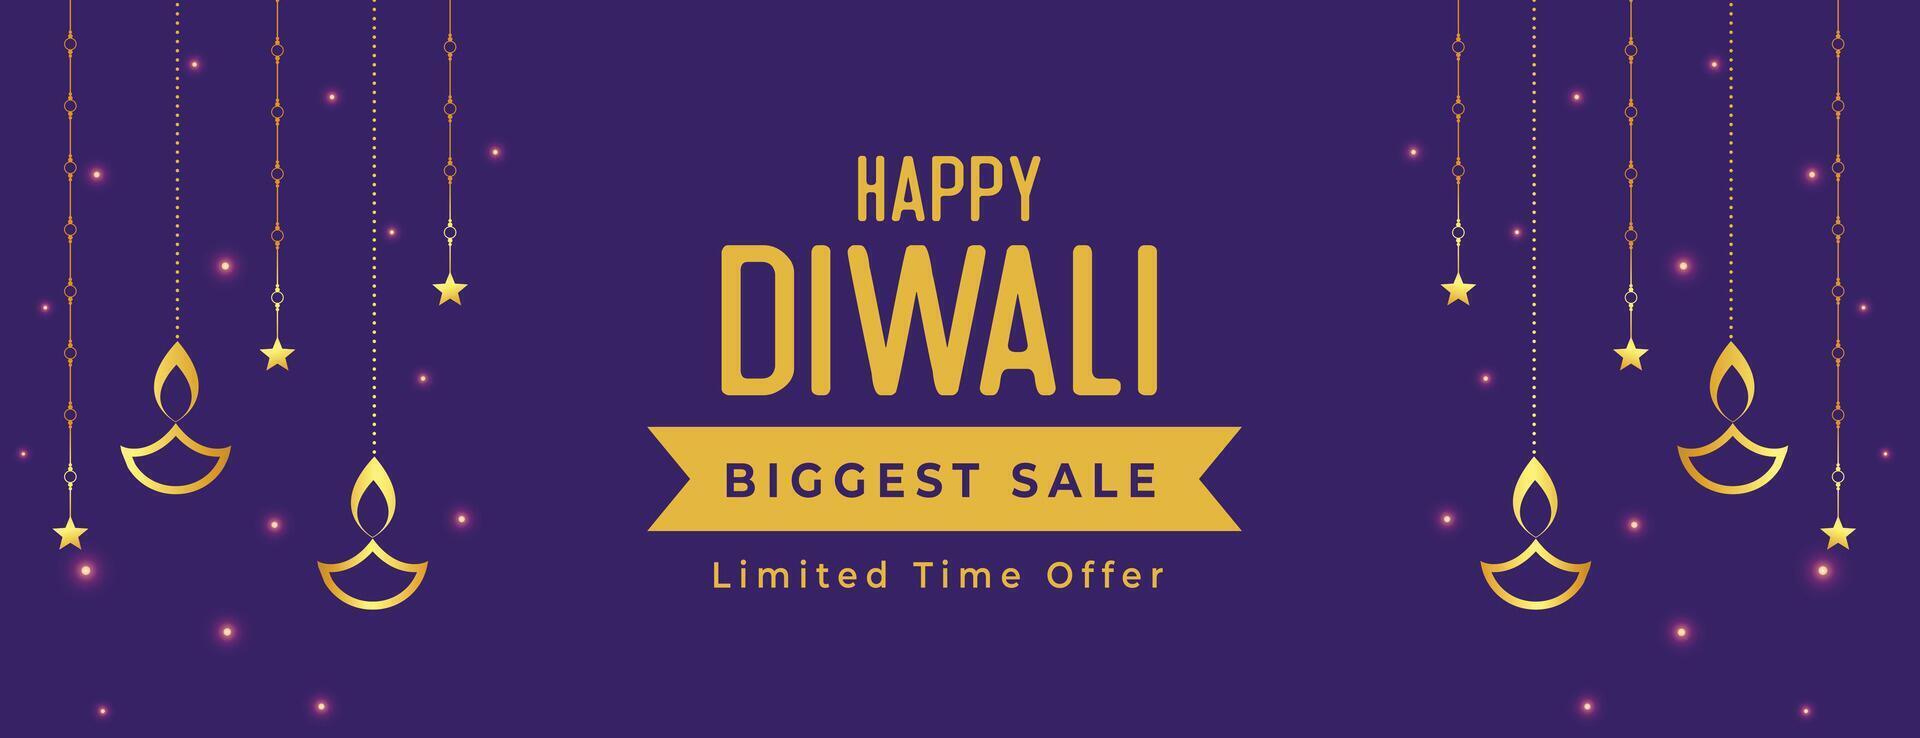 glücklich Diwali größte Verkauf und Angebot Banner mit Laterne vektor